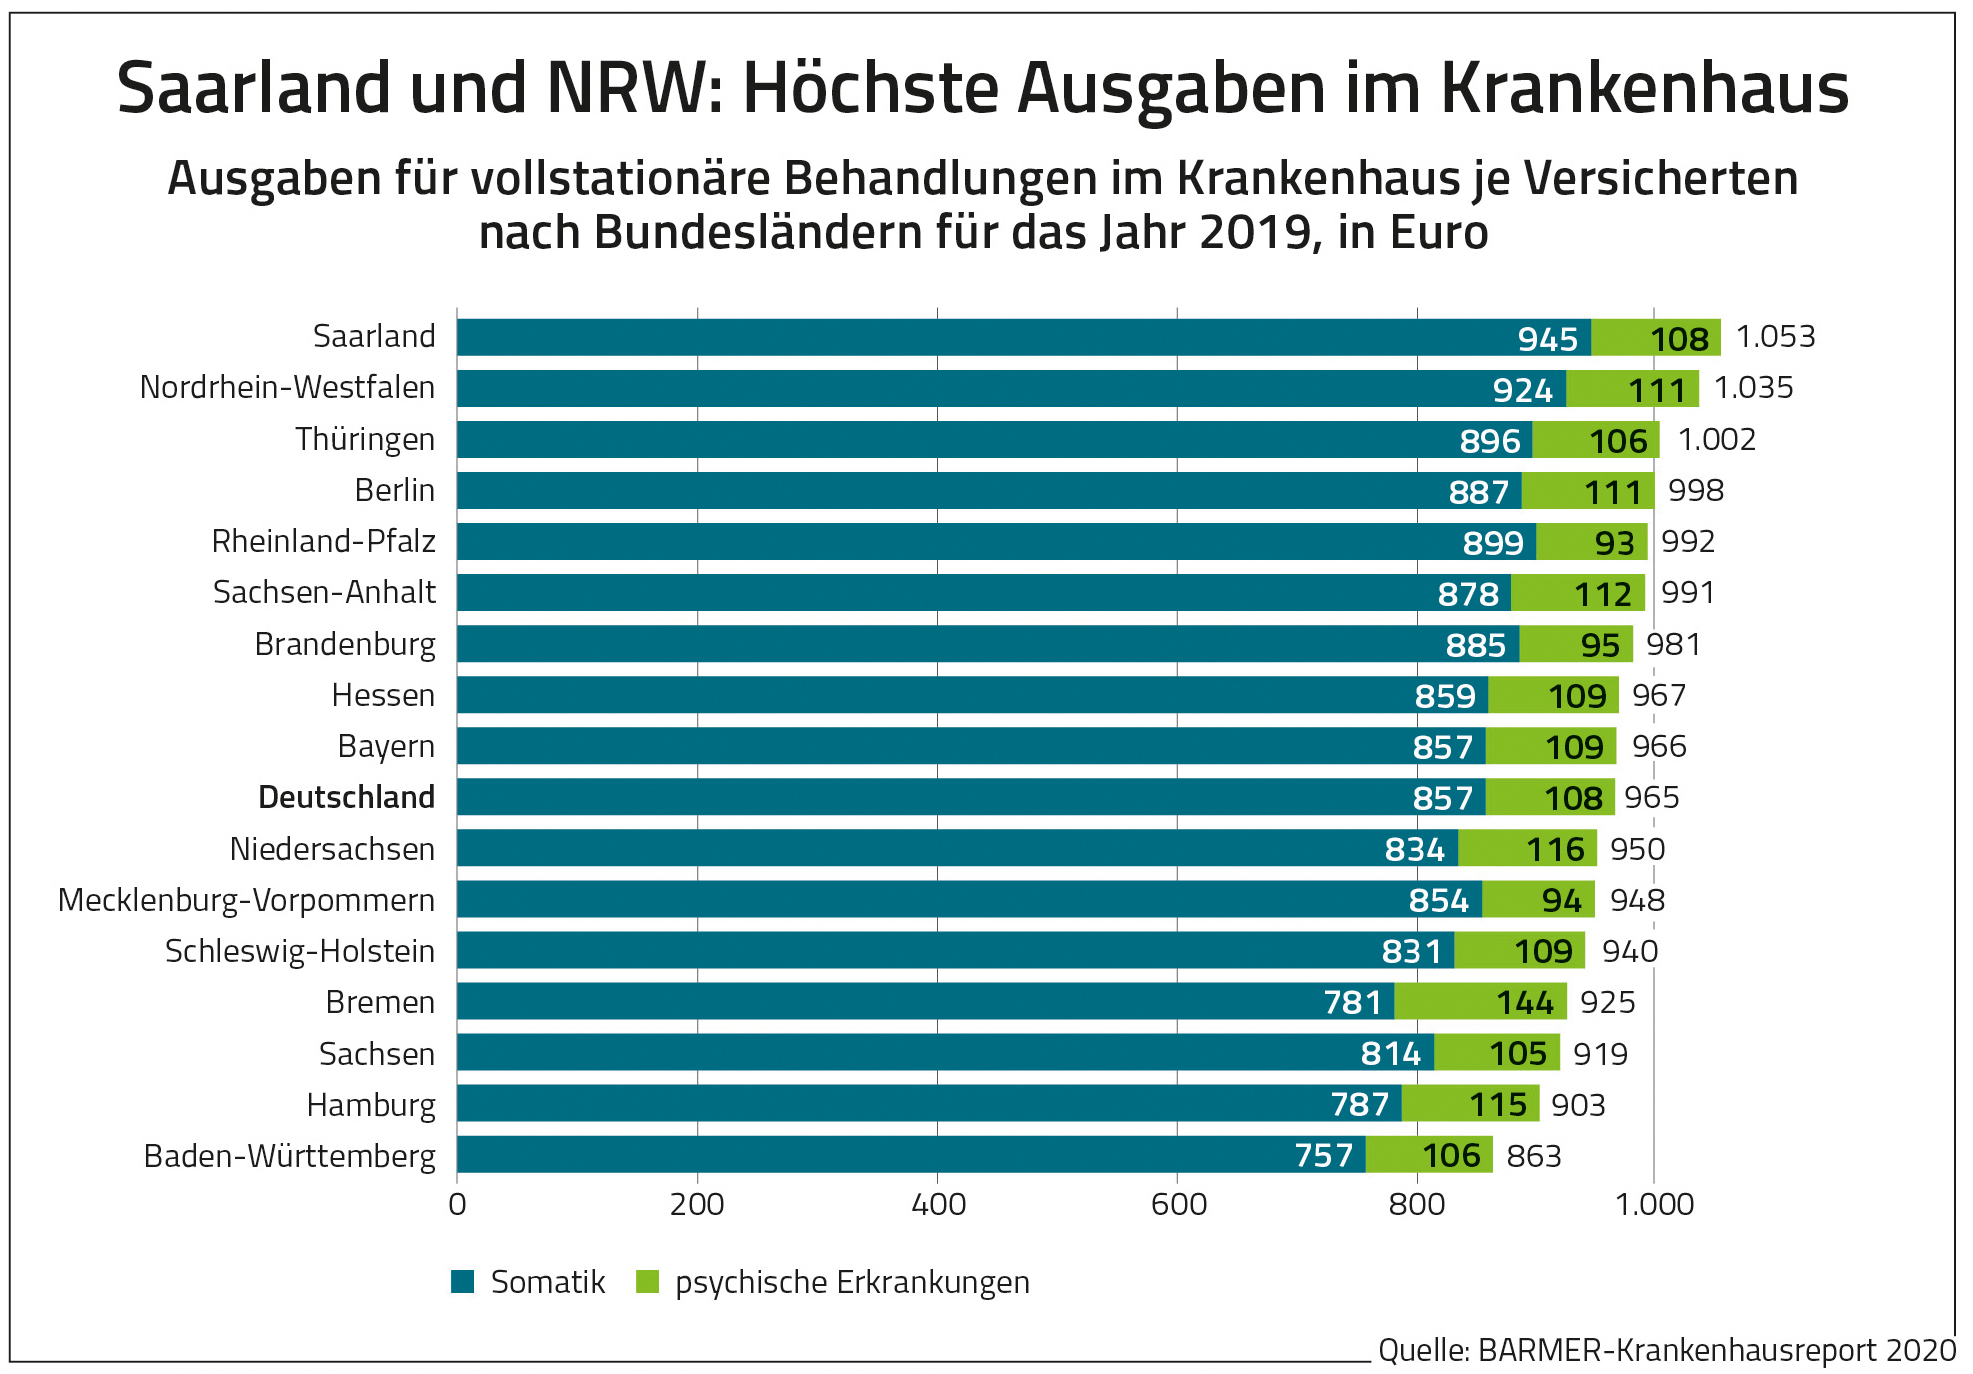 Diese Grafik zeigt die Krankenhauskosten je Versicherten nach Bundesland